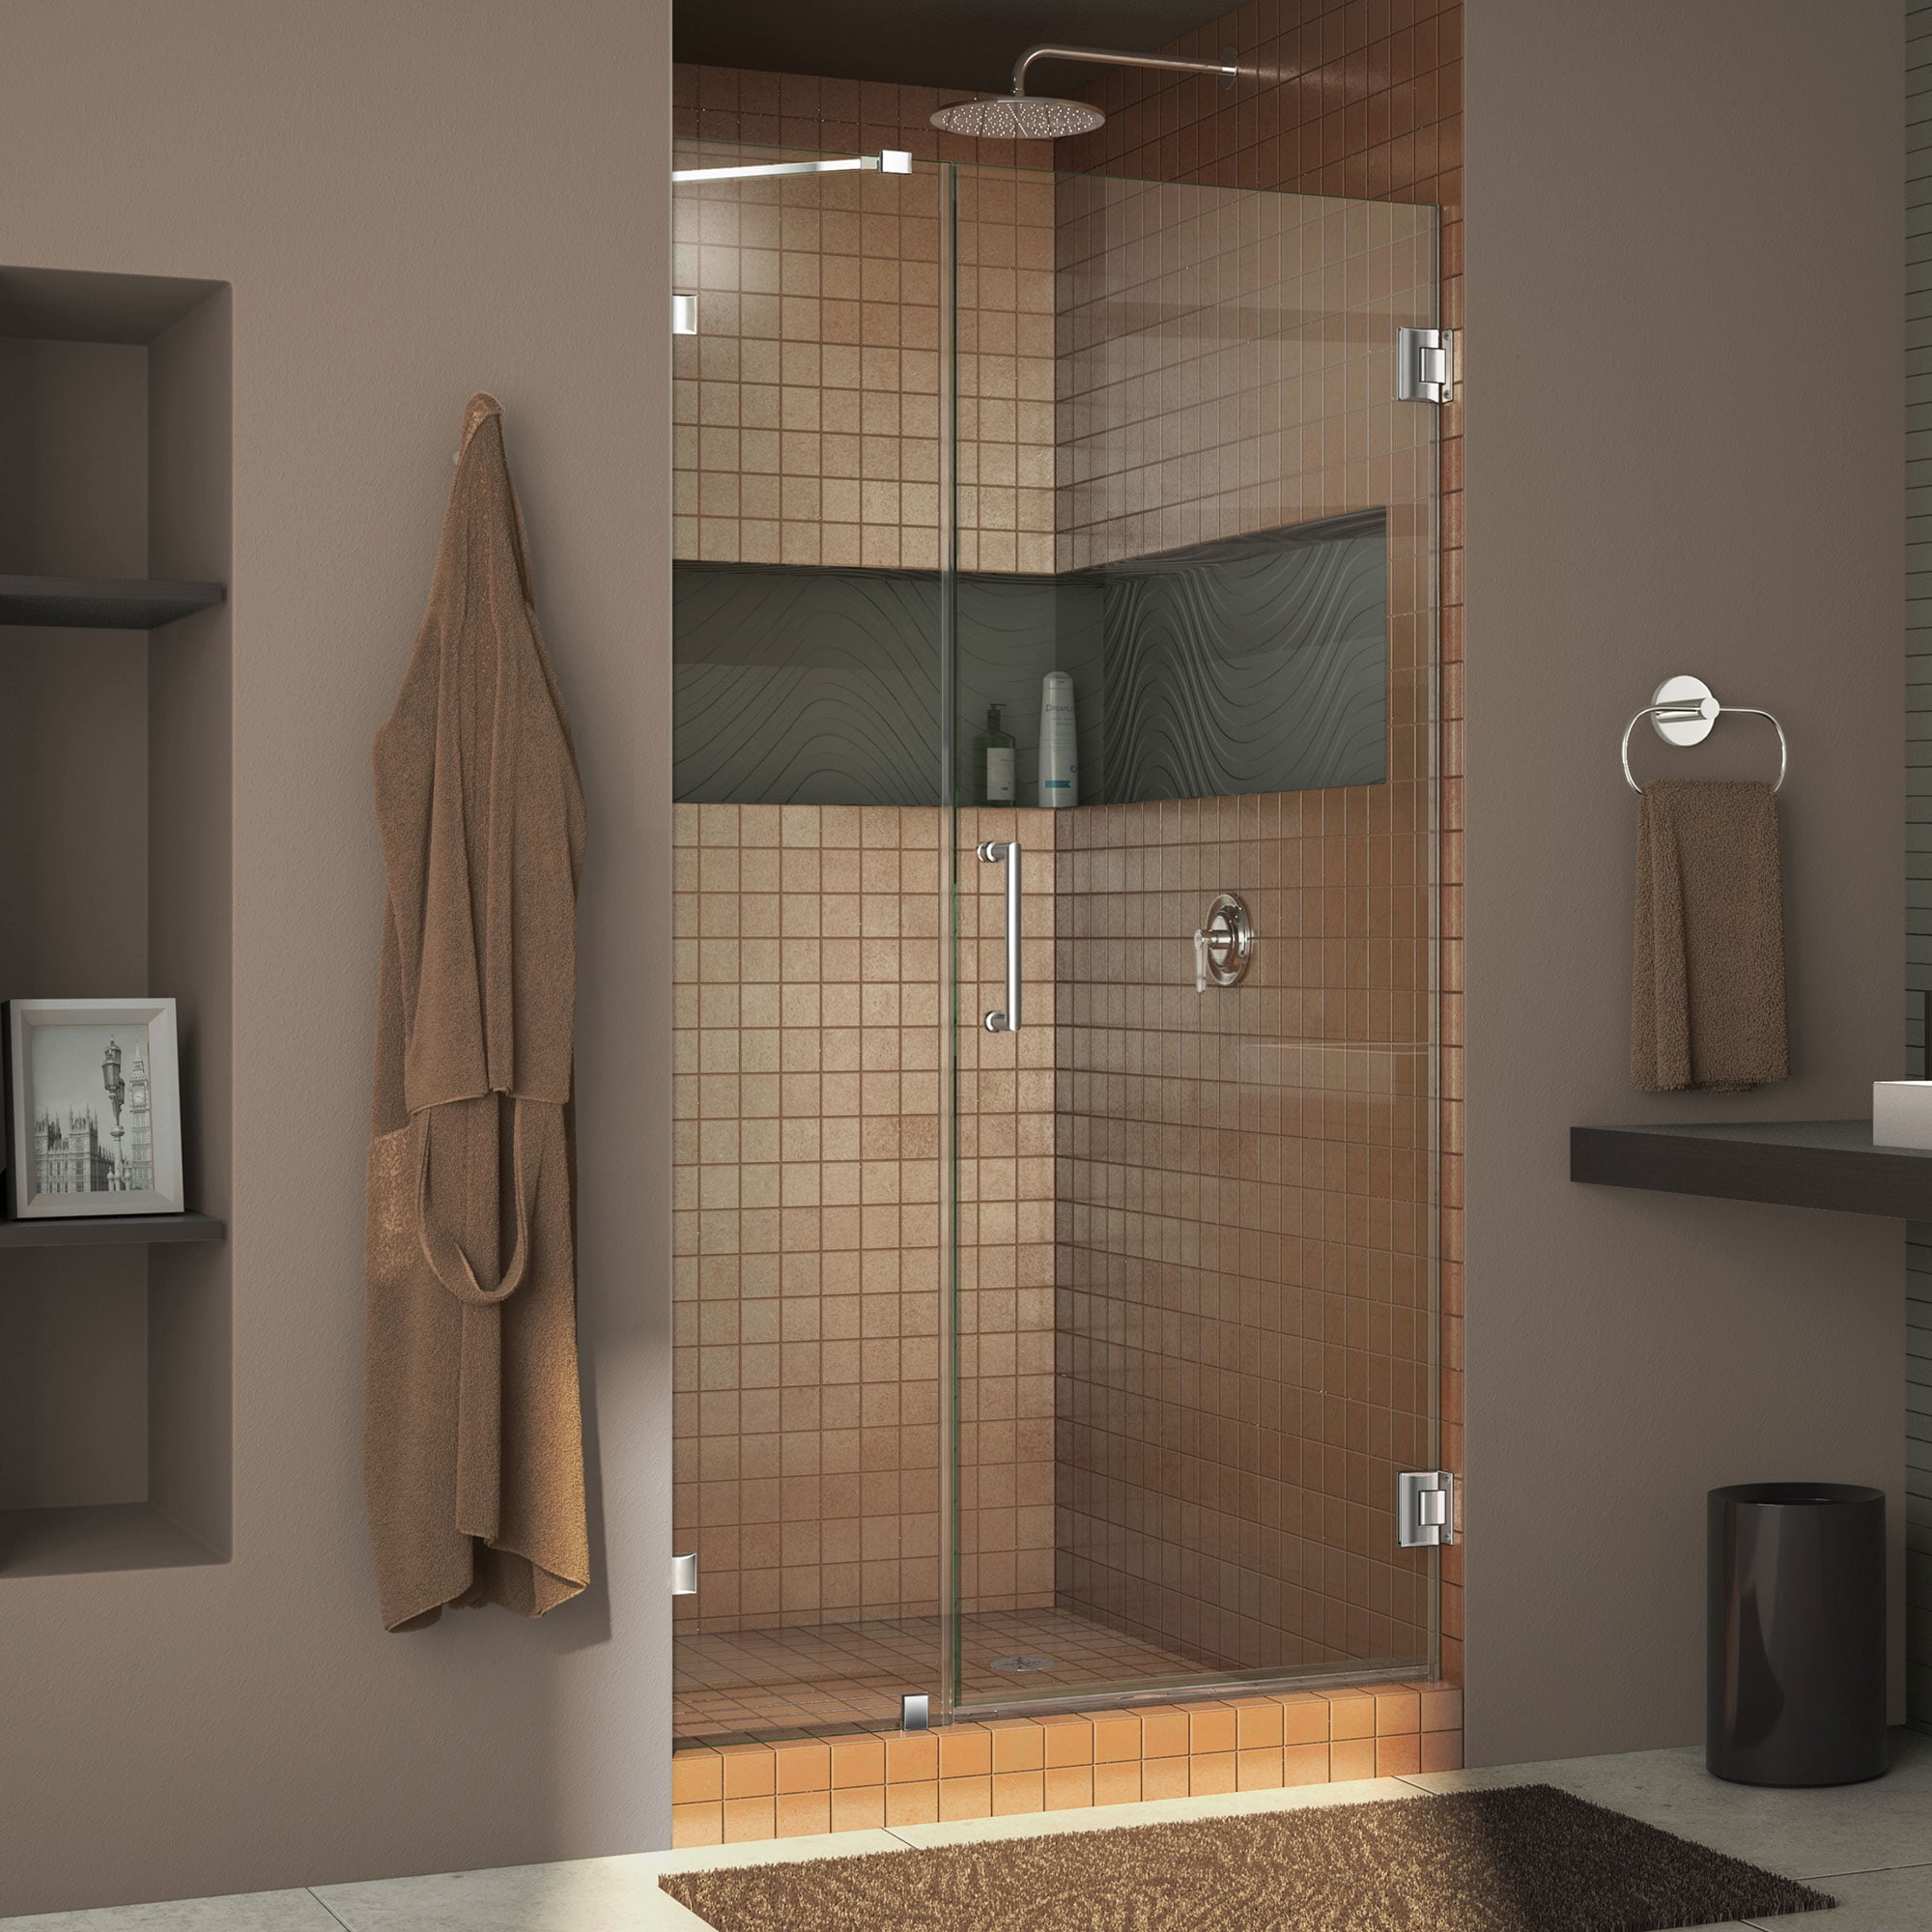 UnidoorLux 42" Frameless Hinged Shower Door, Clear 3/8" Glass Door, Chrome